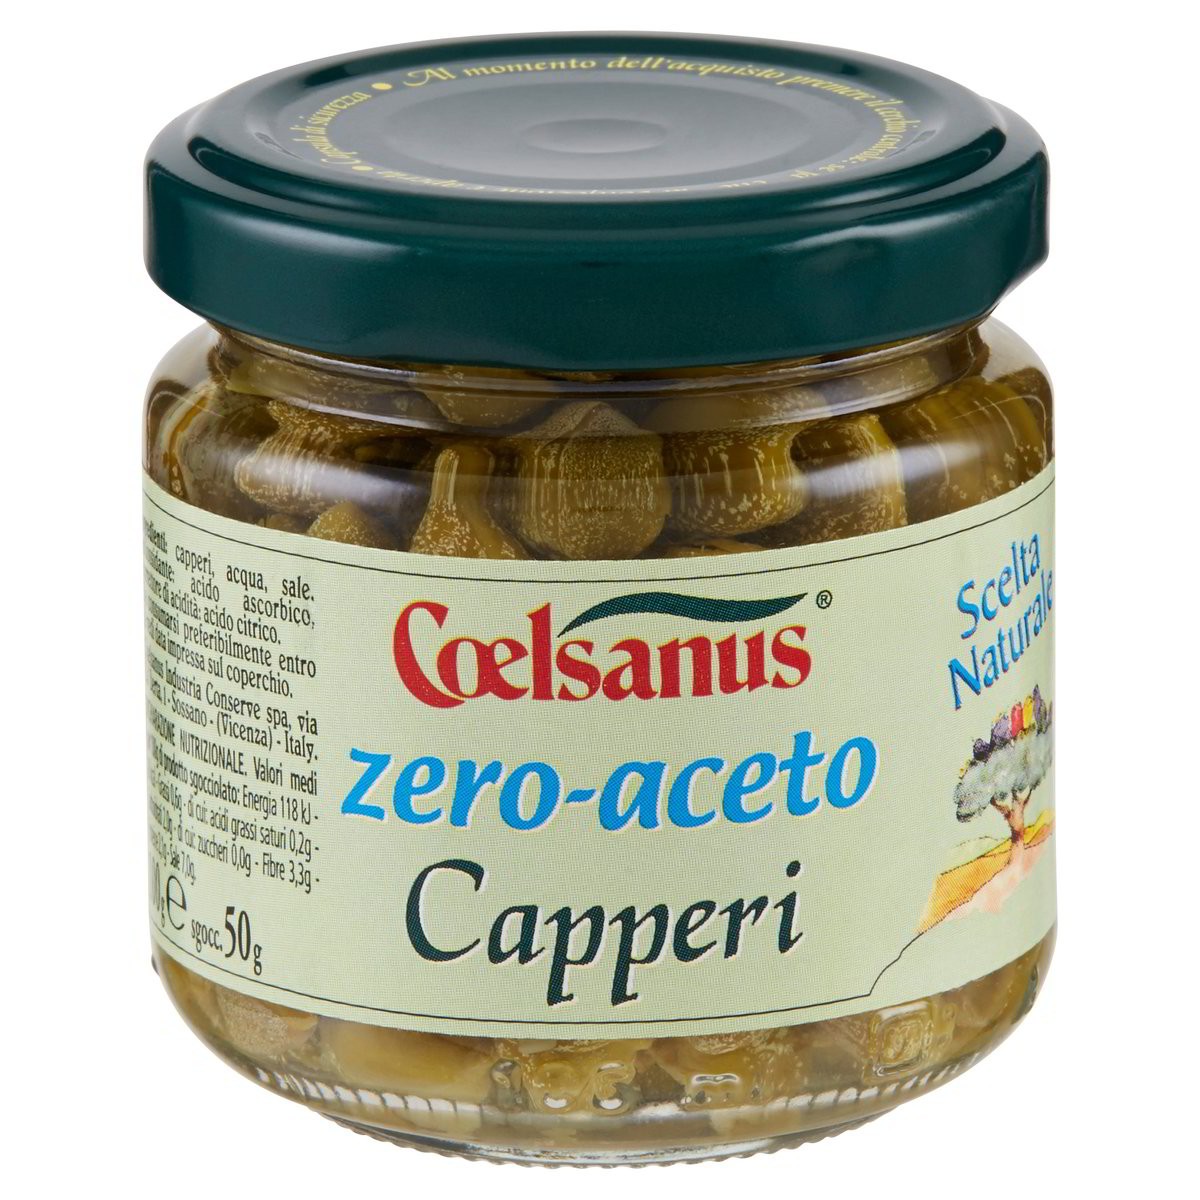 Coelsanus Capperi zero aceto